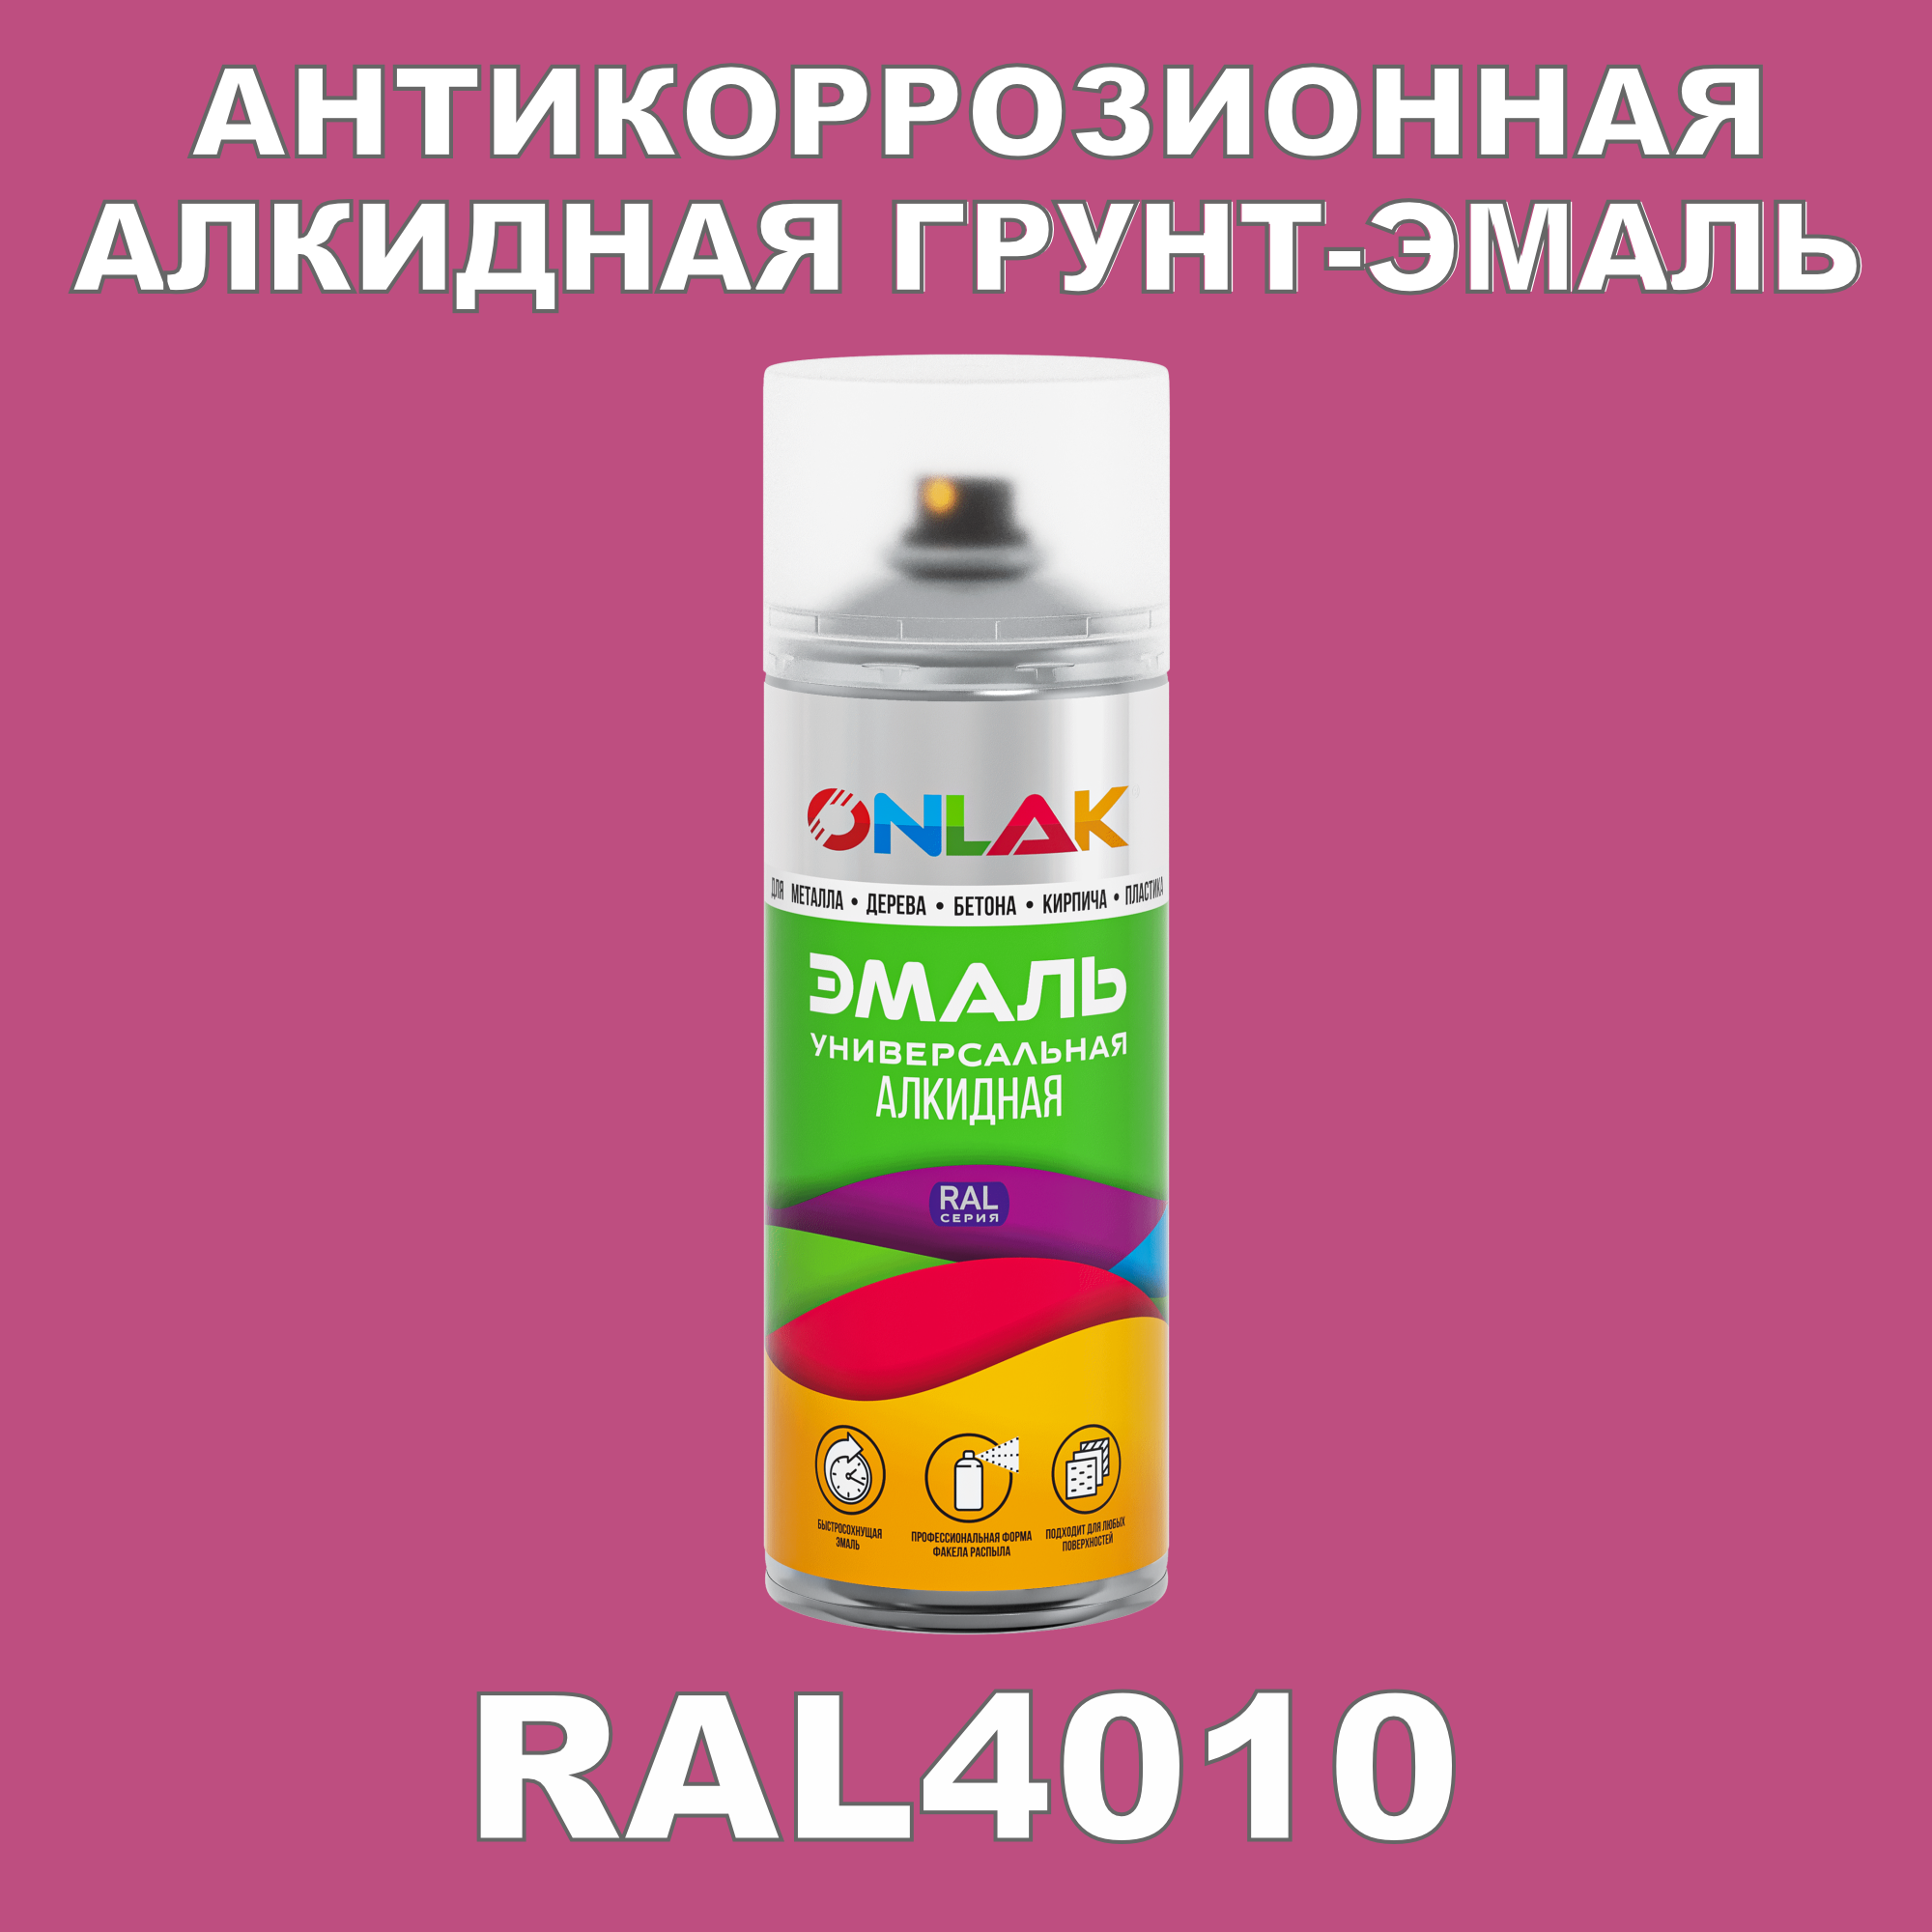 Антикоррозионная грунт-эмаль ONLAK RAL4010 полуматовая для металла и защиты от ржавчины